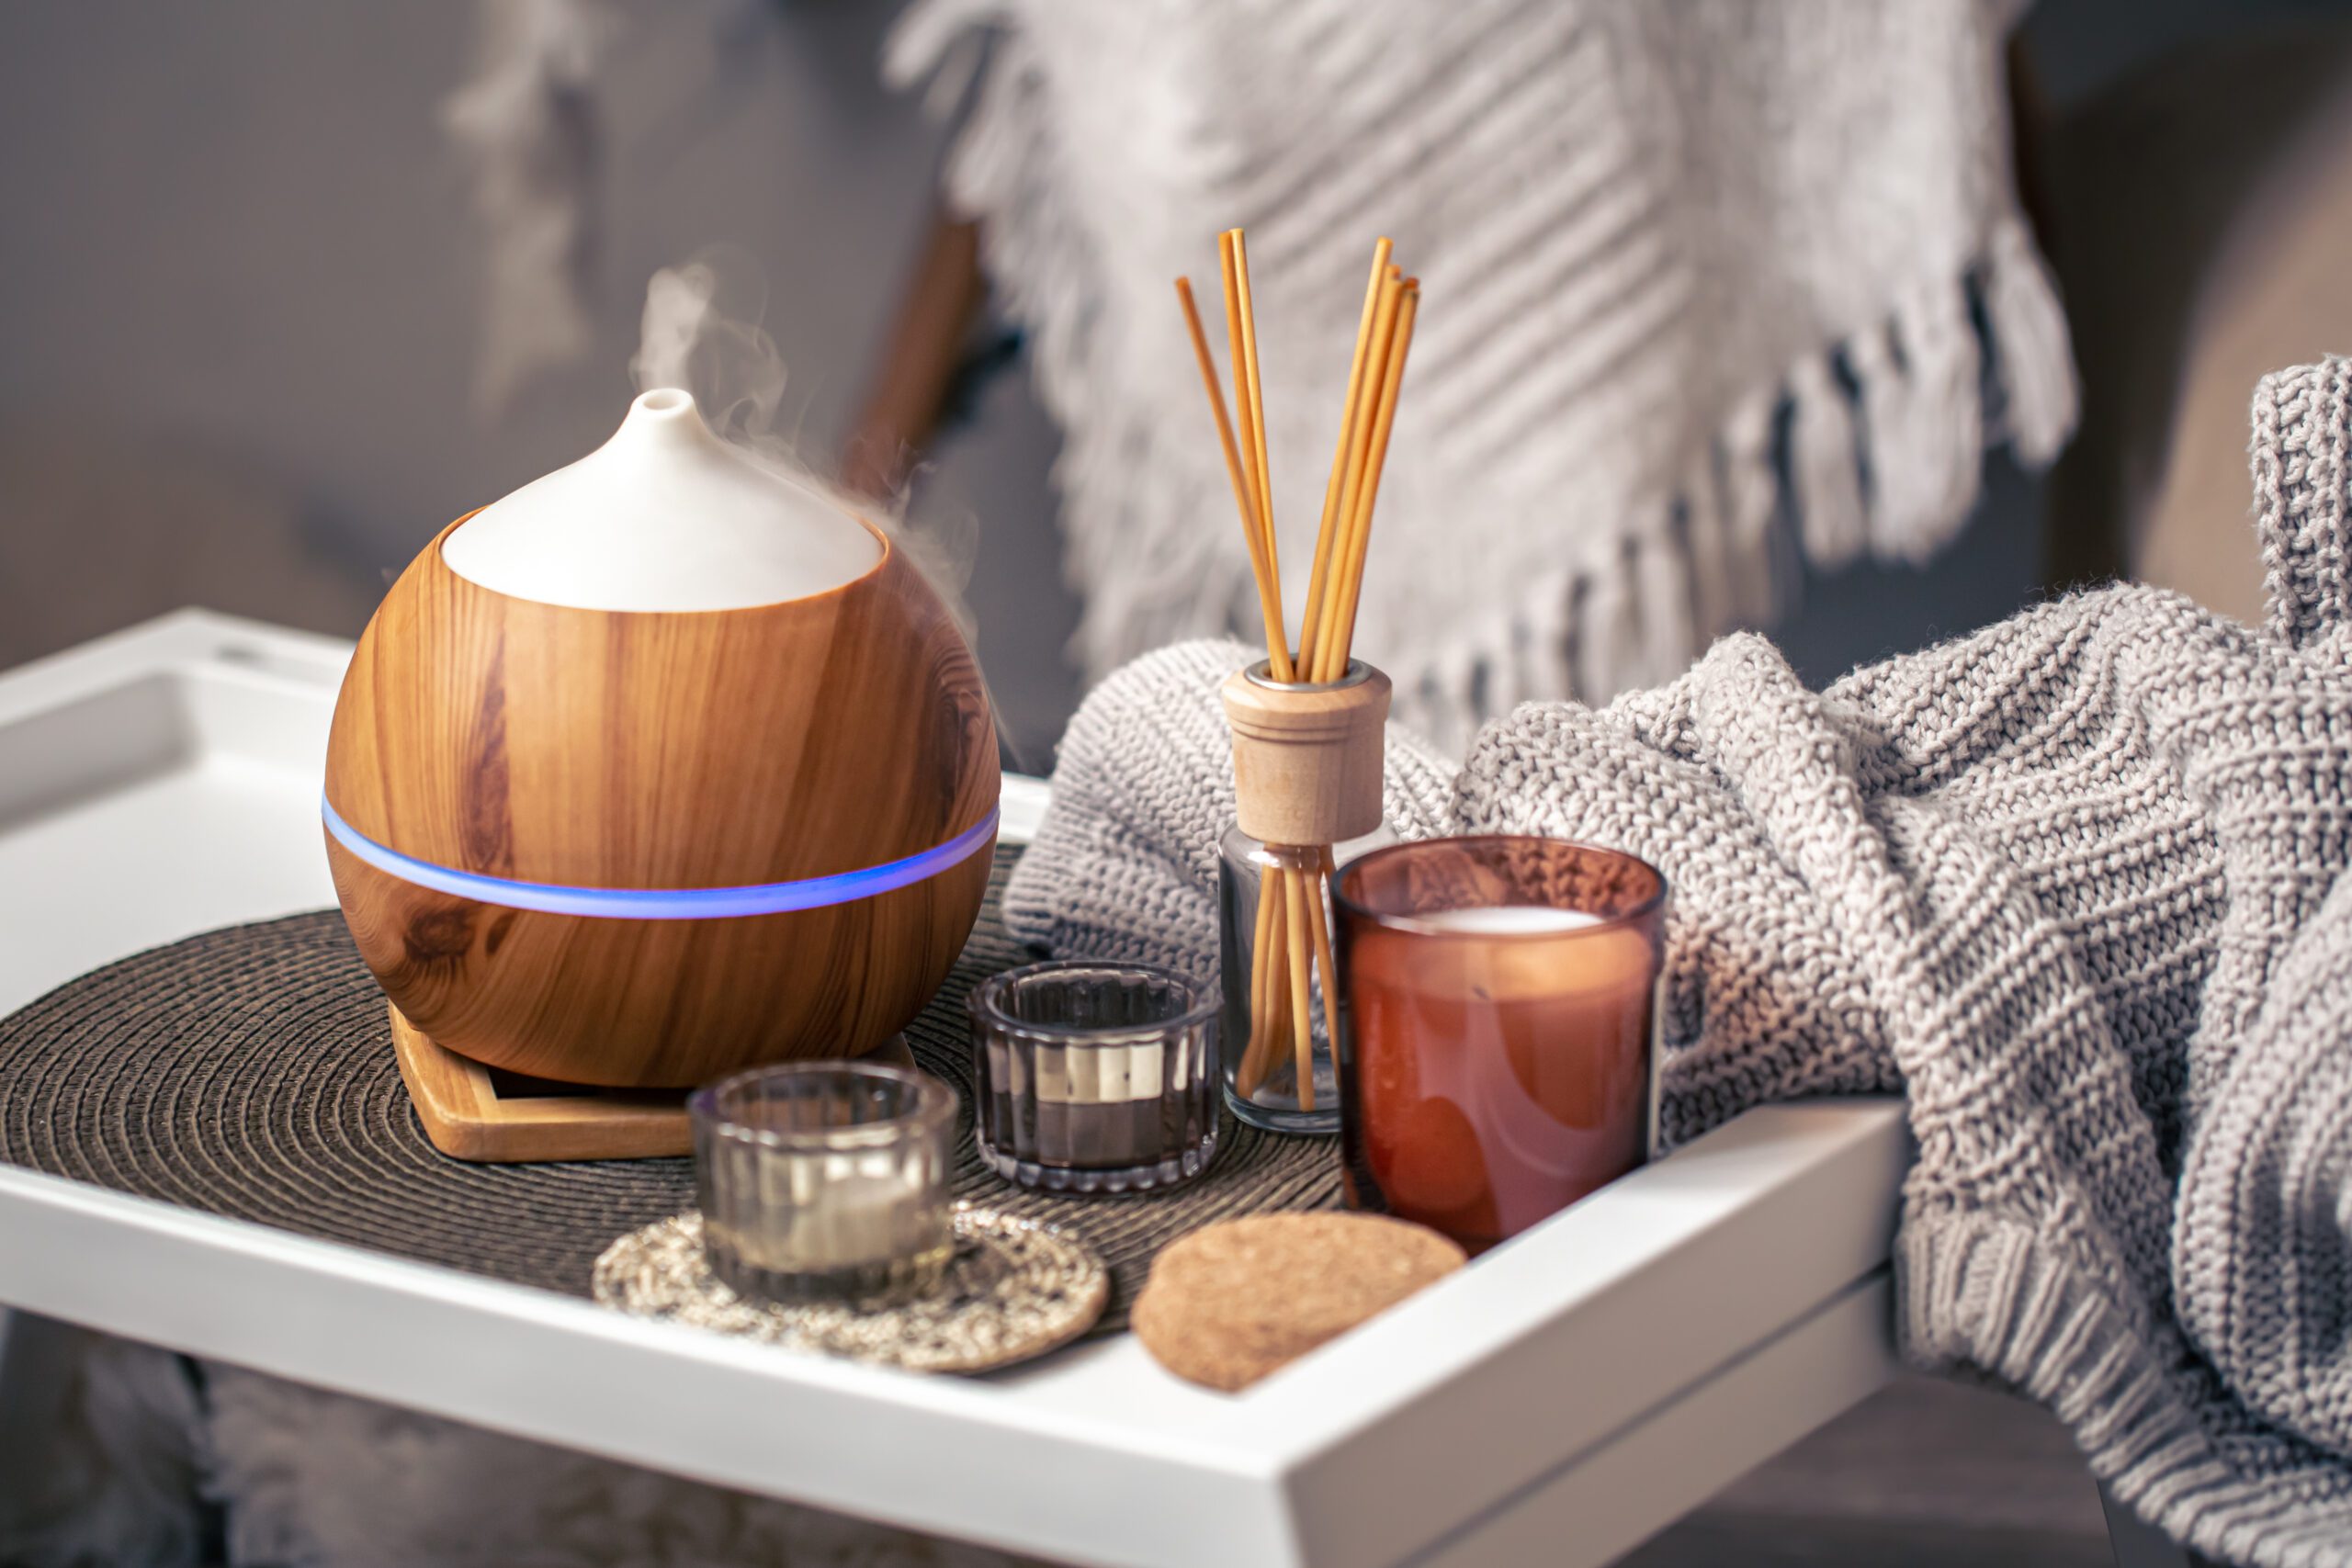 Casa perfumada: aromaterapia ganha adeptos ao despertar memórias afetivas